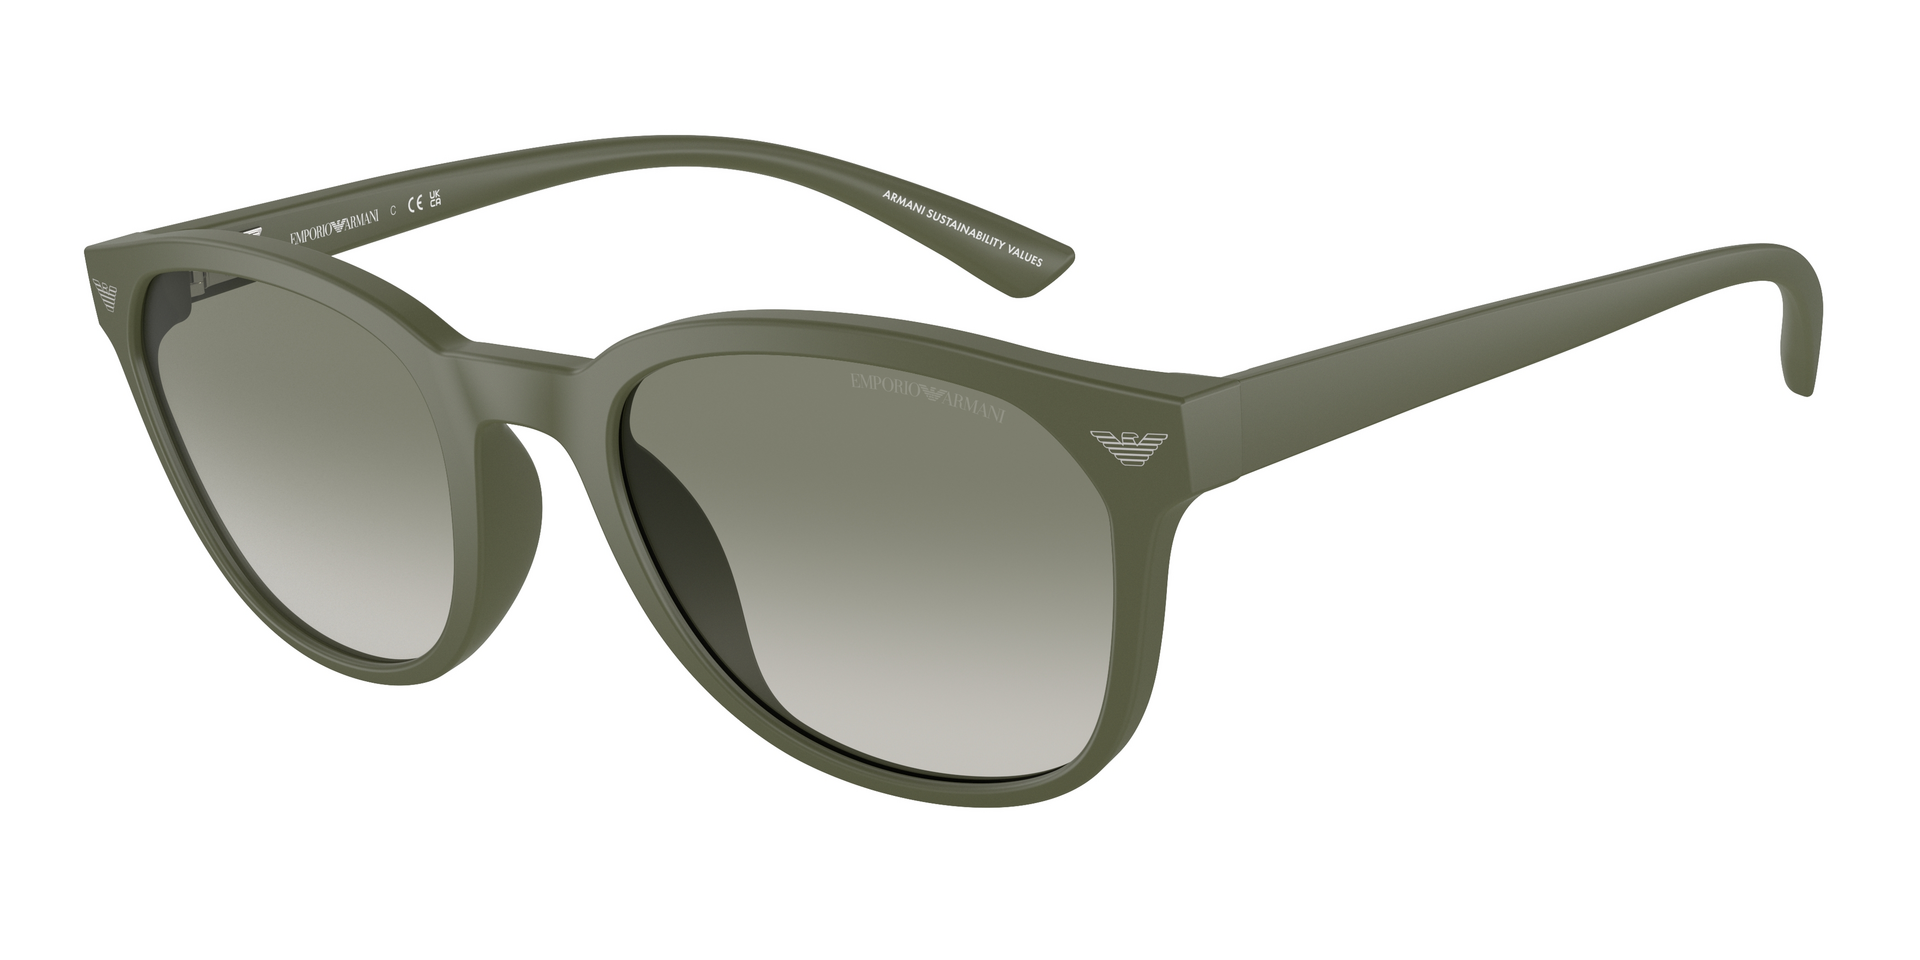 Das Bild zeigt die Sonnenbrille EA4225U 60998 von der Marke Emporio Armani in grün.